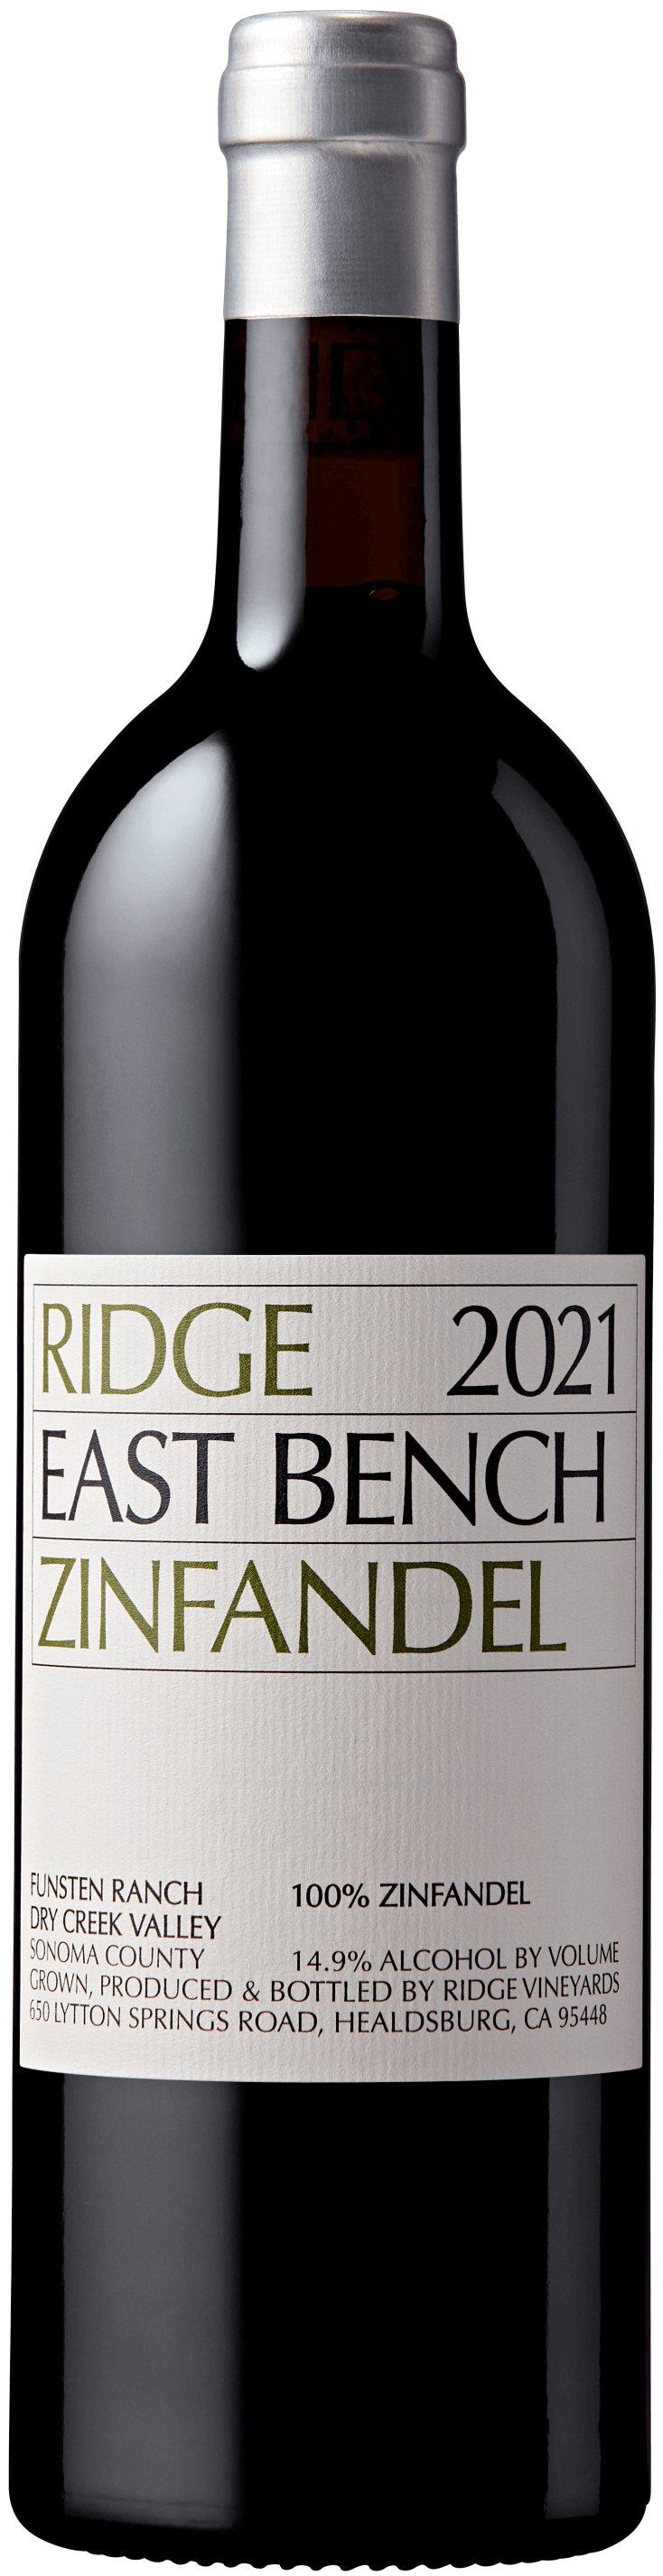 Ridge Vineyards East Bench Zinfandel 2021 750ml